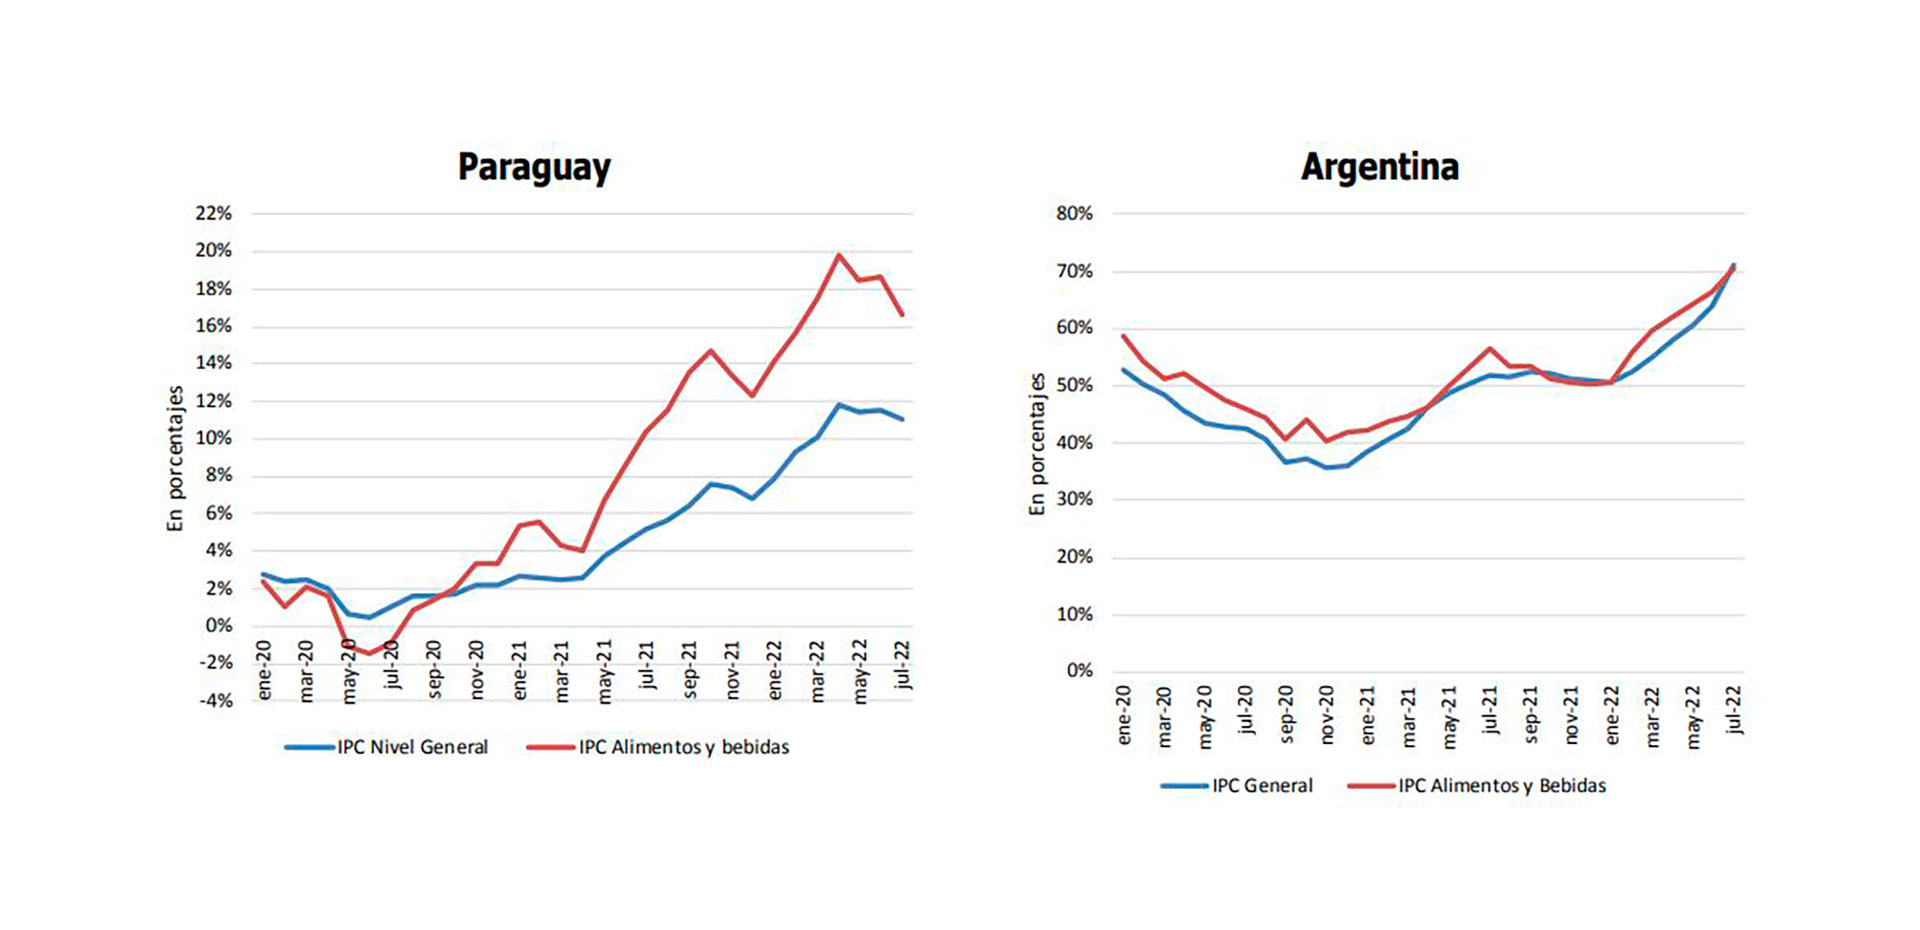 En Paraguay el precio de los alimentos supera la inflación general, pero en empezó a descender en los últimos meses. Argentina es el único caso en que ambos índices son prácticamente iguales